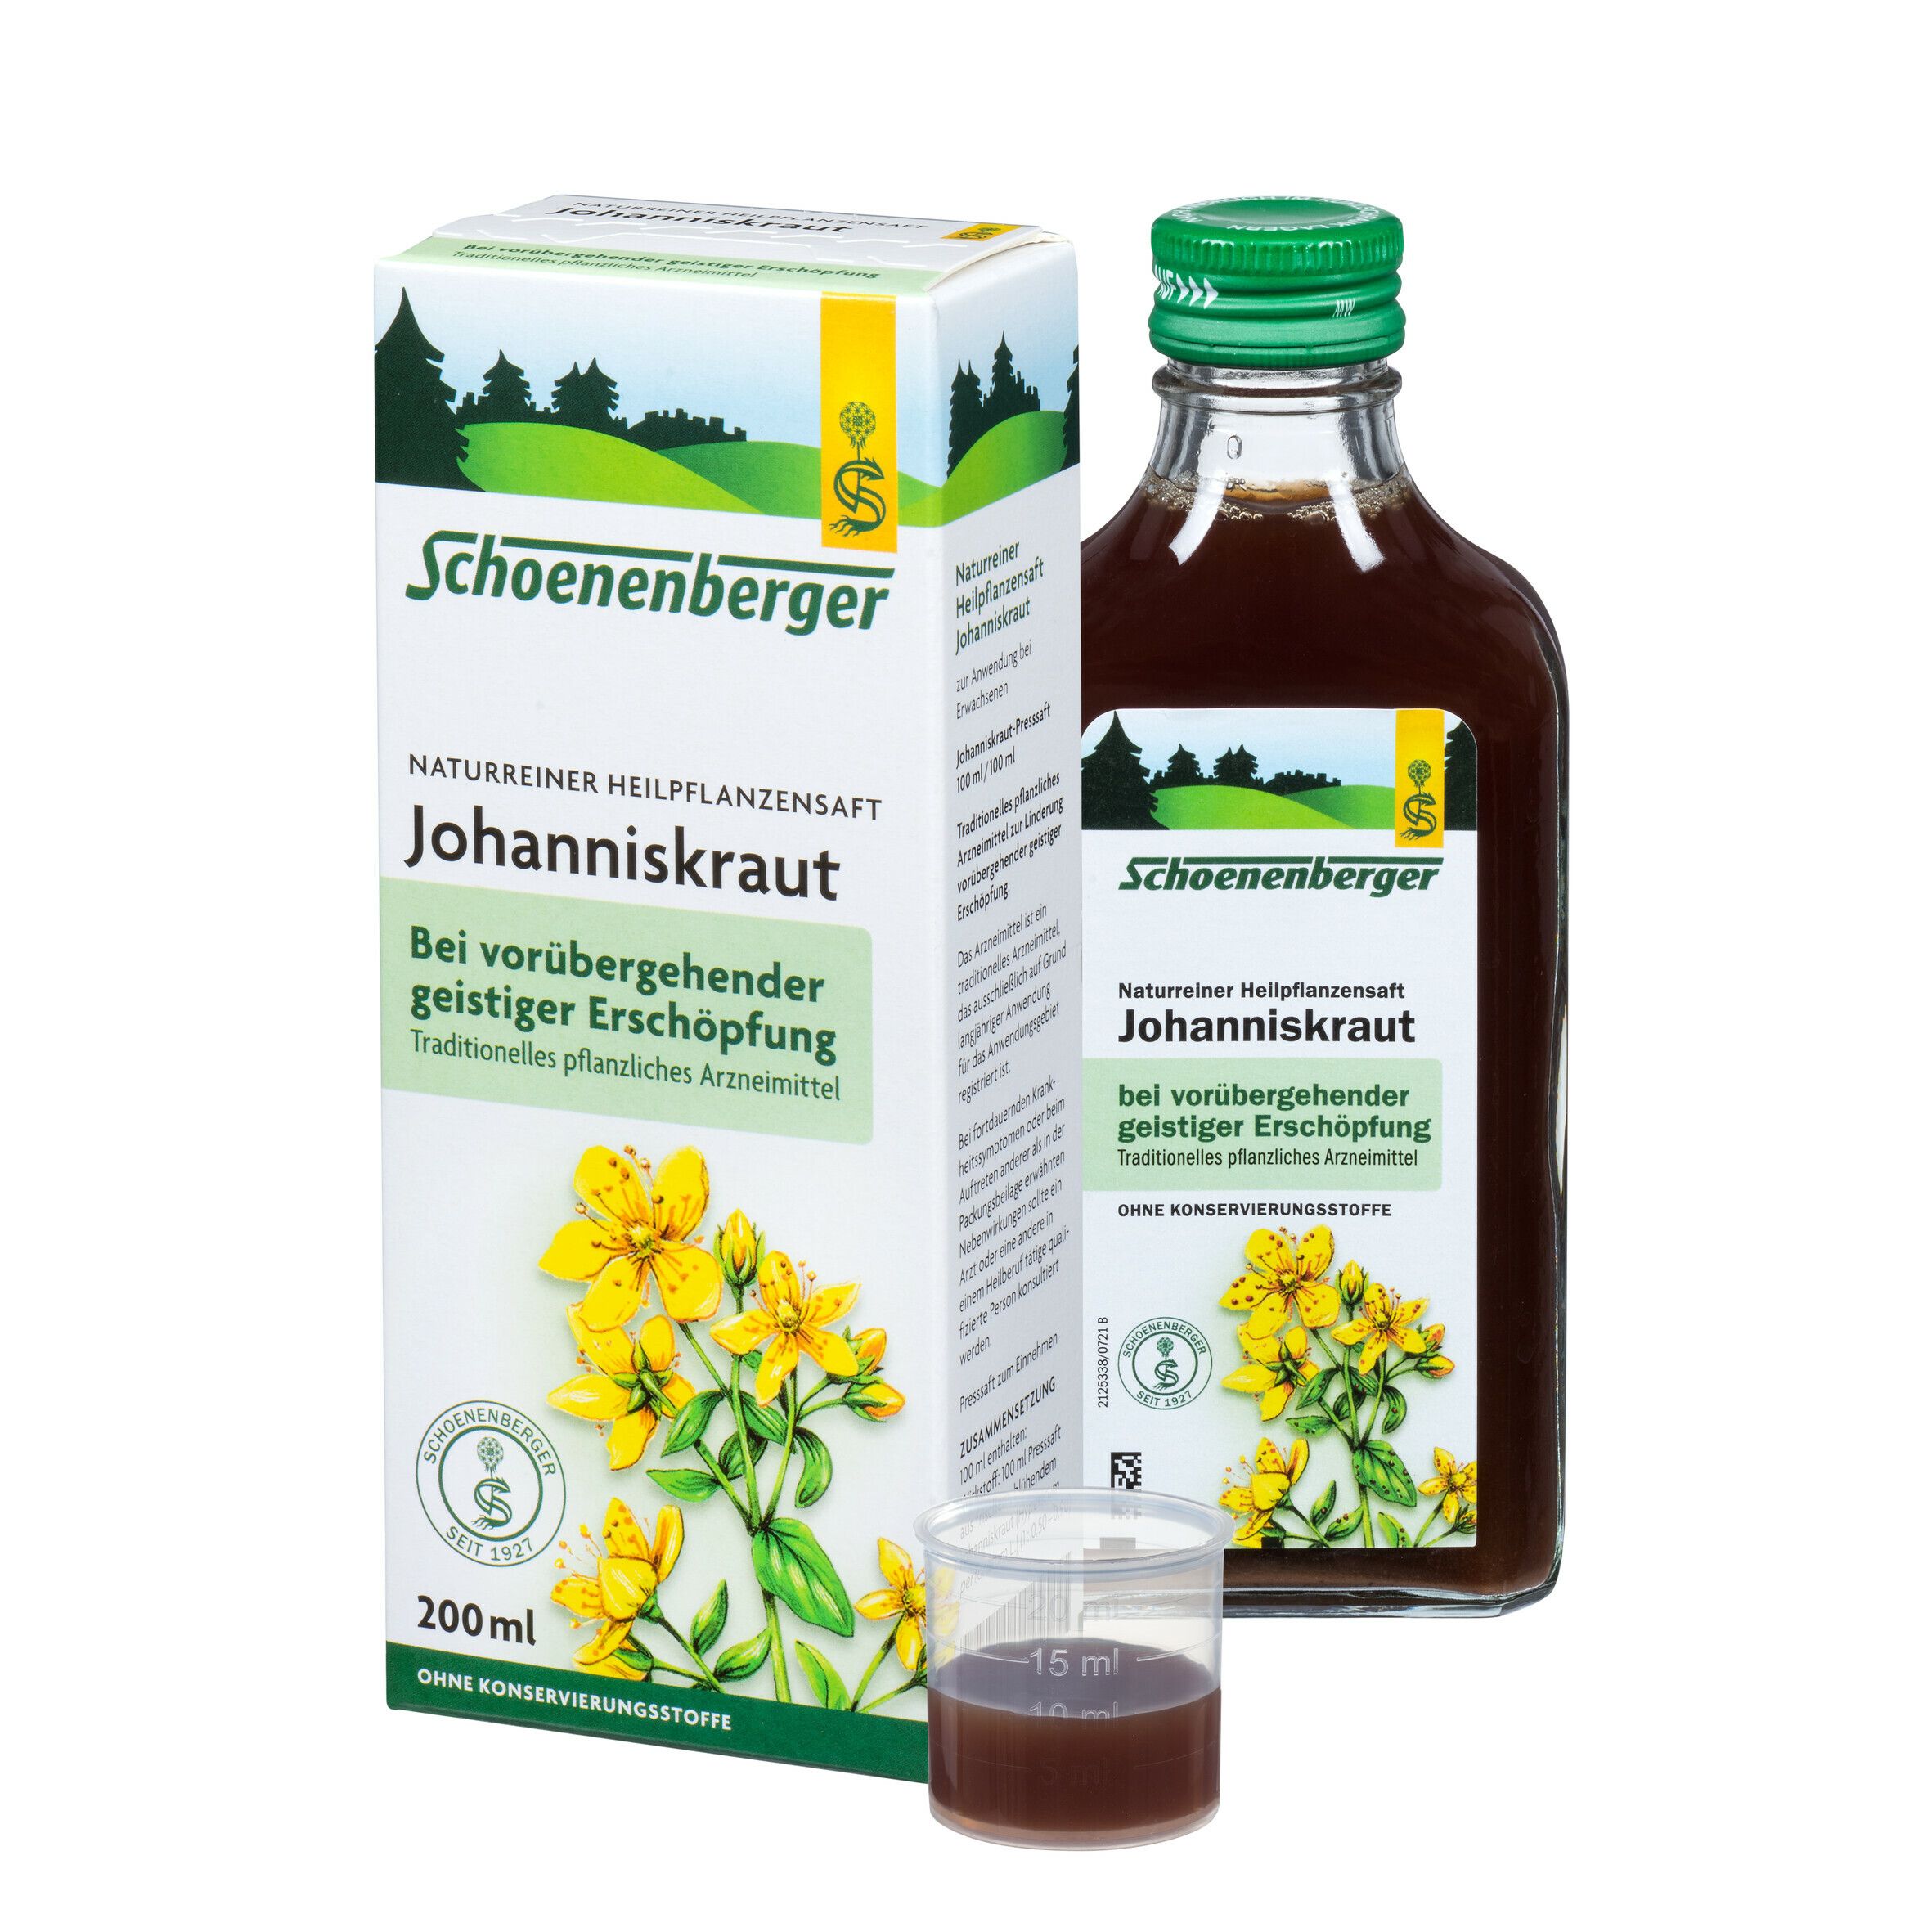 Schoenenberger® naturreiner Heilpflanzensaft Johanniskraut